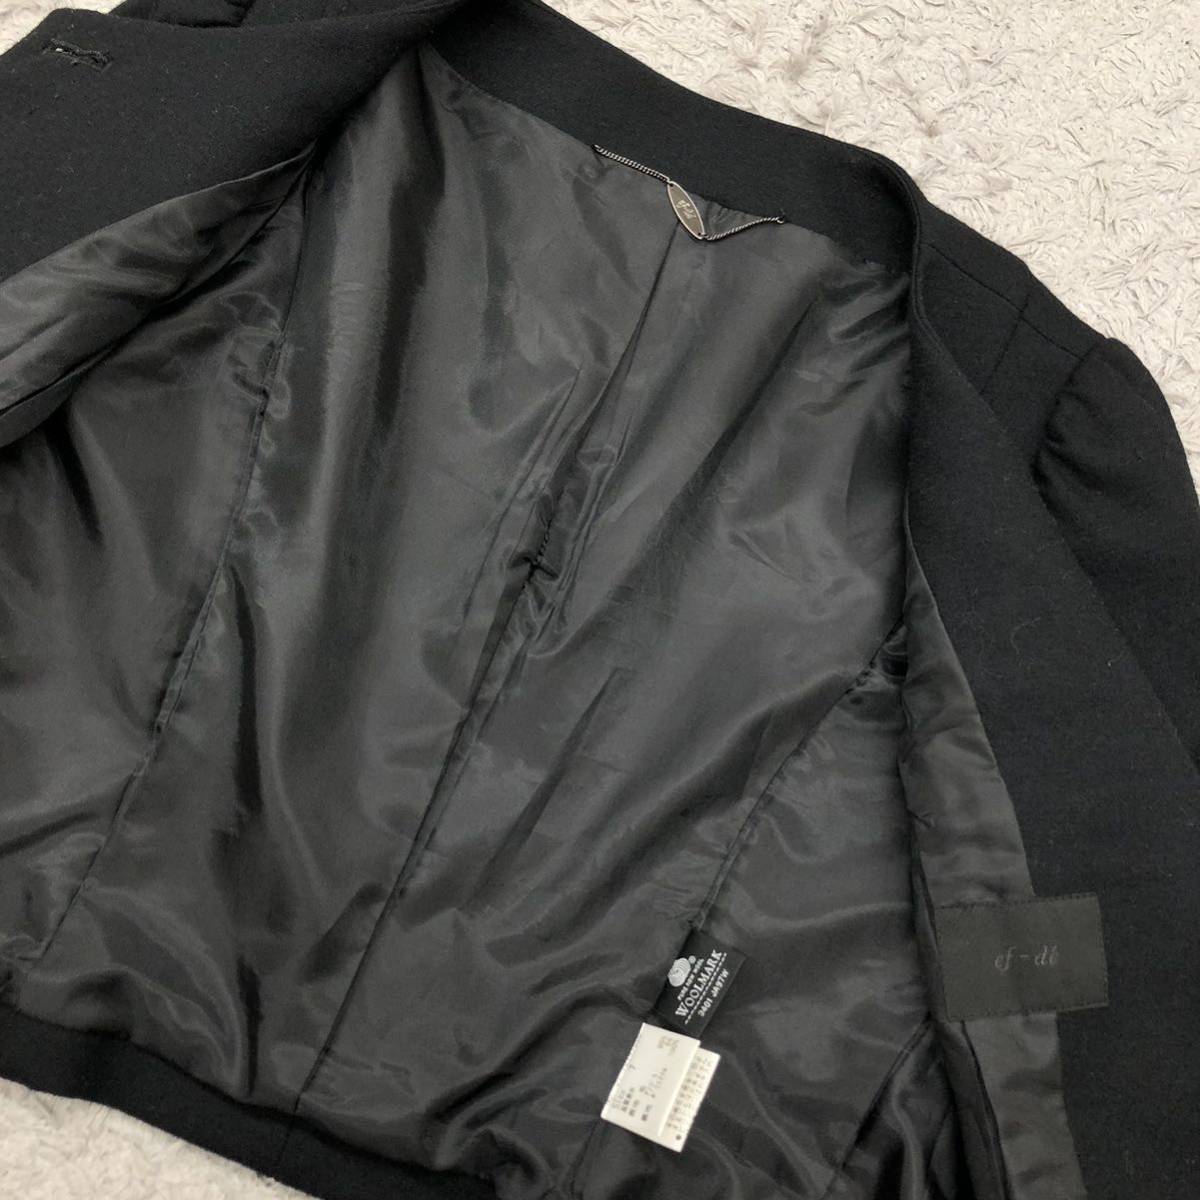 ef-de ef-de no color jacket wool total lining simple black black 7 number S